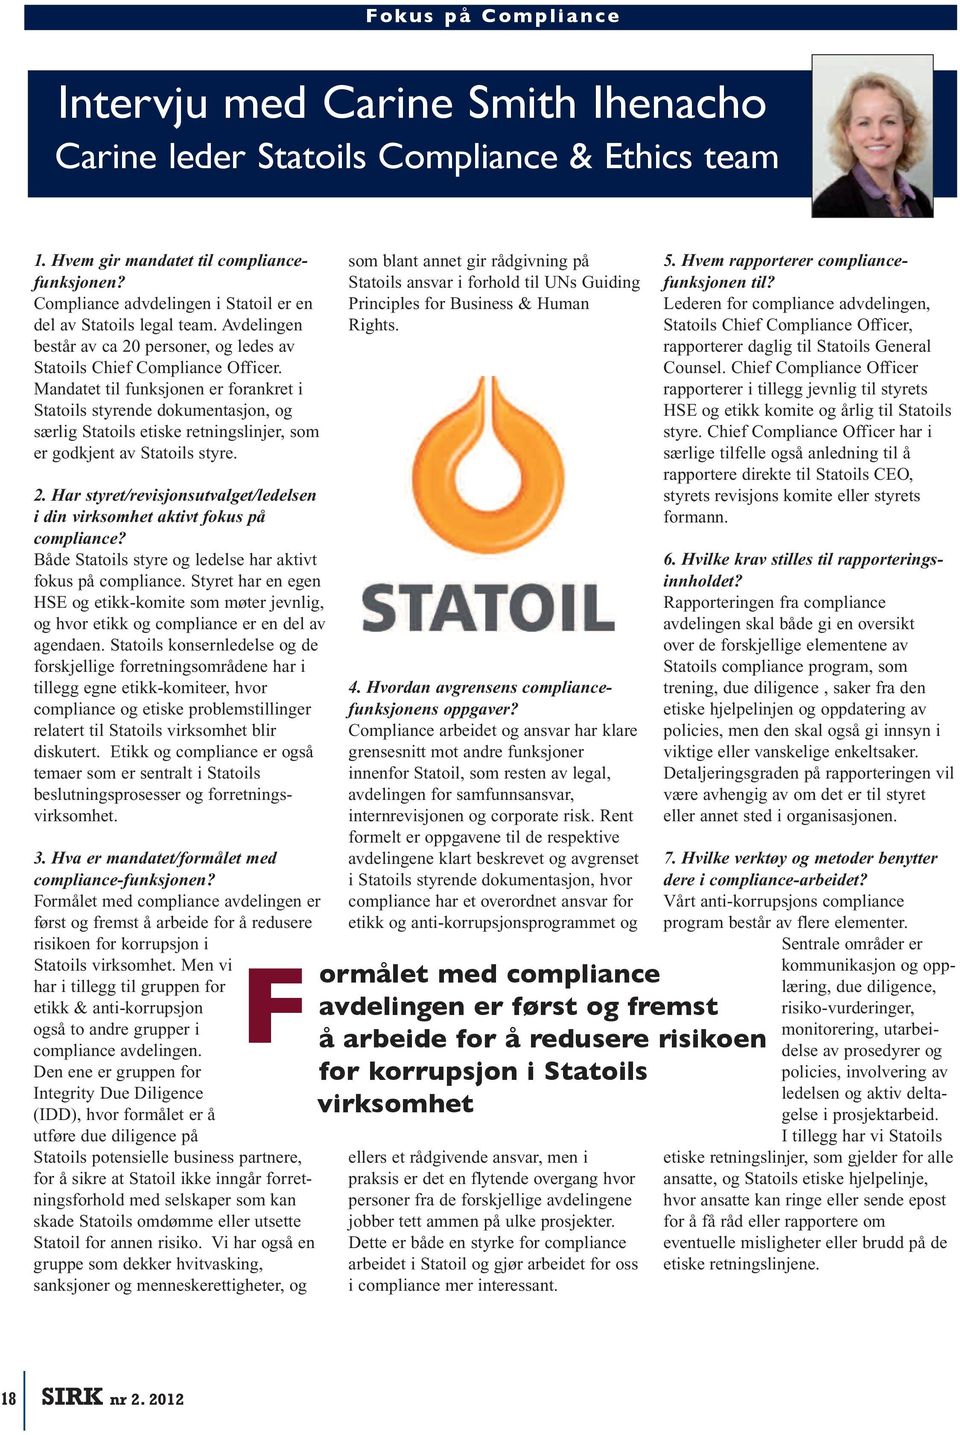 Mandatet til funksjonen er forankret i Statoils styrende dokumentasjon, og særlig Statoils etiske retningslinjer, som er godkjent av Statoils styre. 2.